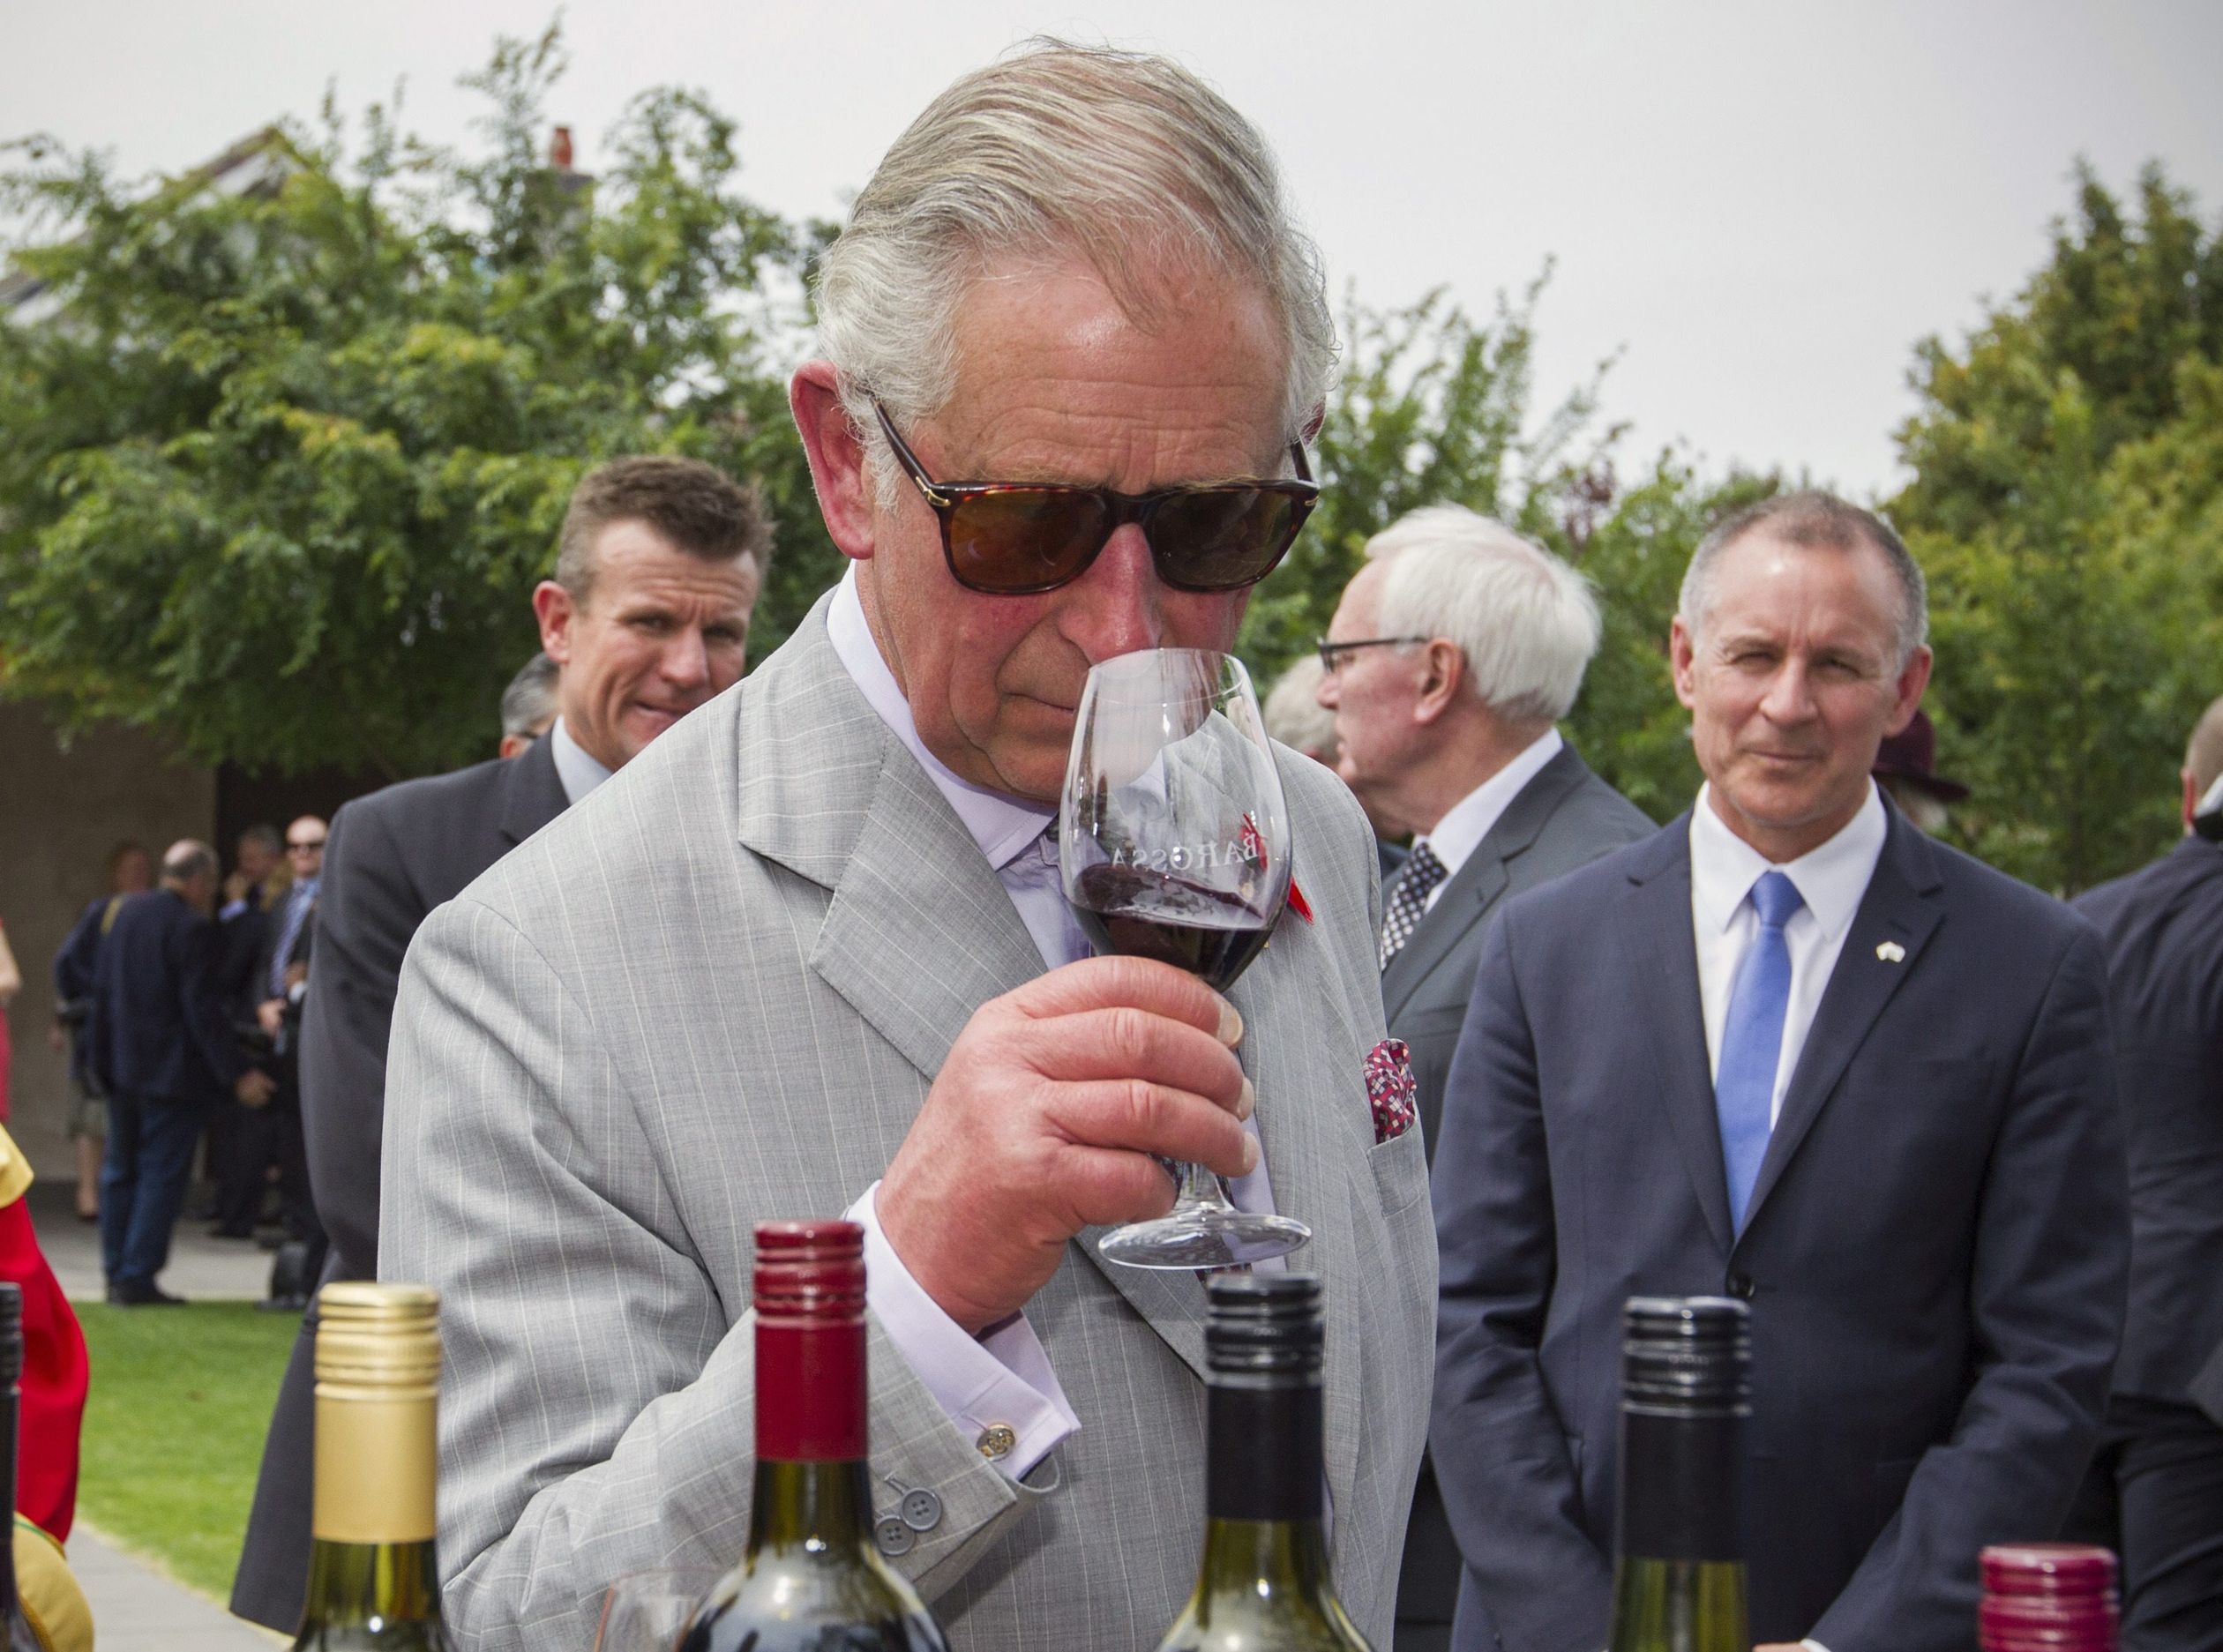 Tijdens een bezoek aan Australië in 2015 probeert Charles een wijntje.